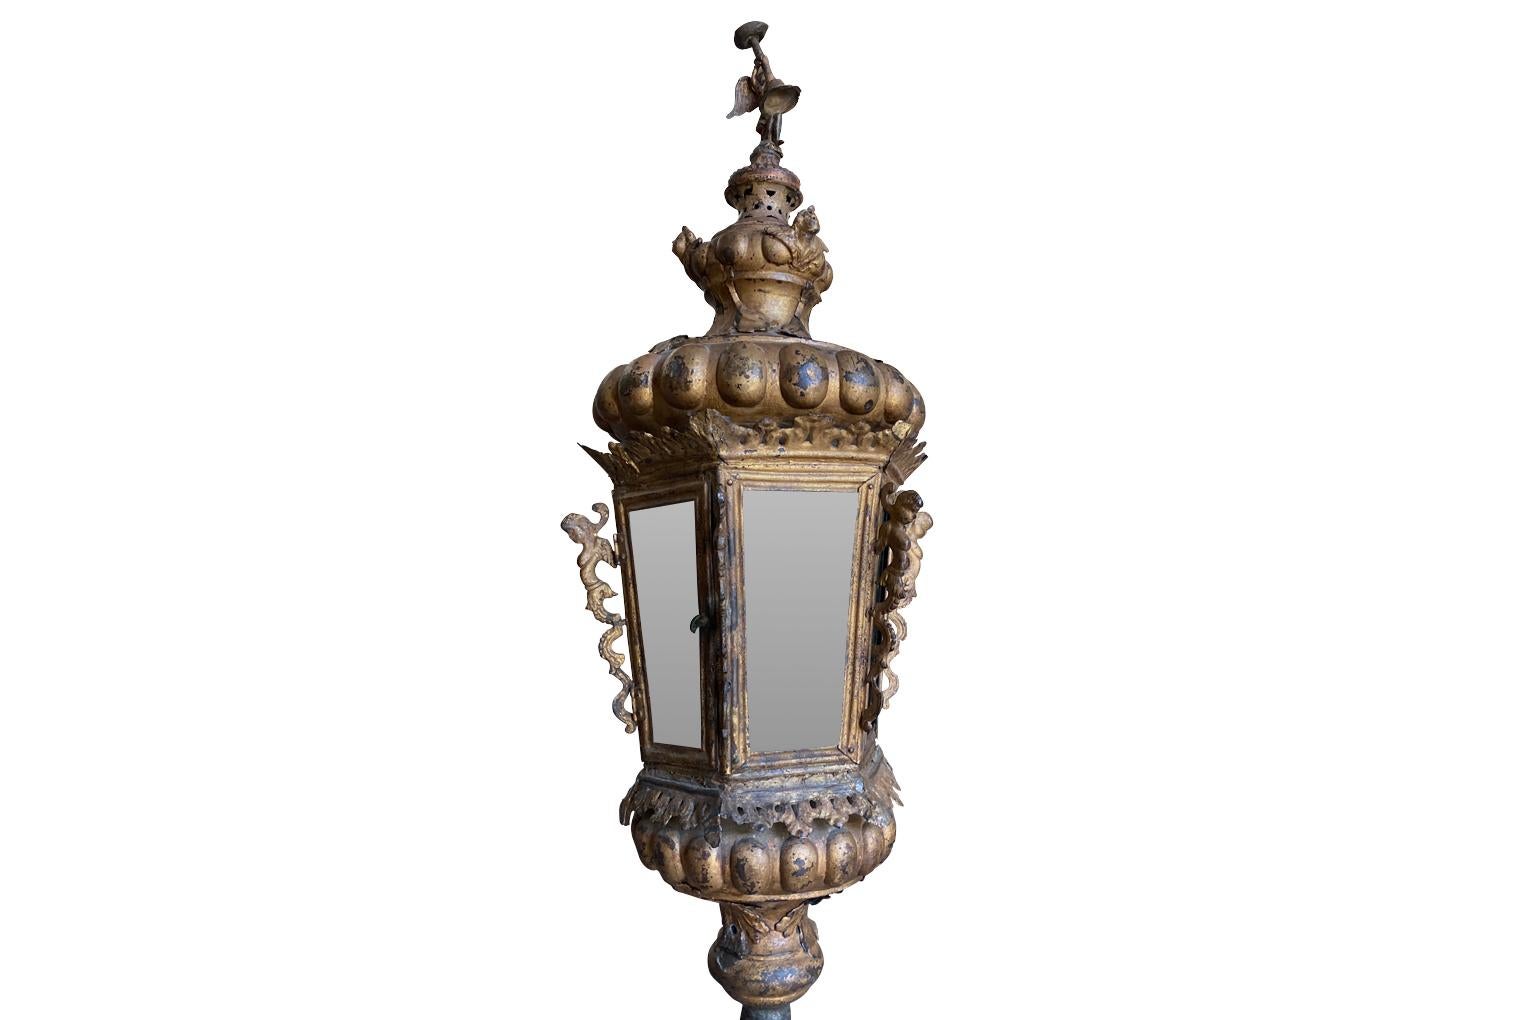 Une très belle lanterne du 18ème siècle provenant de Venise. Merveilleusement travaillé en métal doré et décoré d'un ange et de putti - debout dans son socle en pierre. Grande échelle et prêt à être utilisé avec des bougies ou être électrifié.